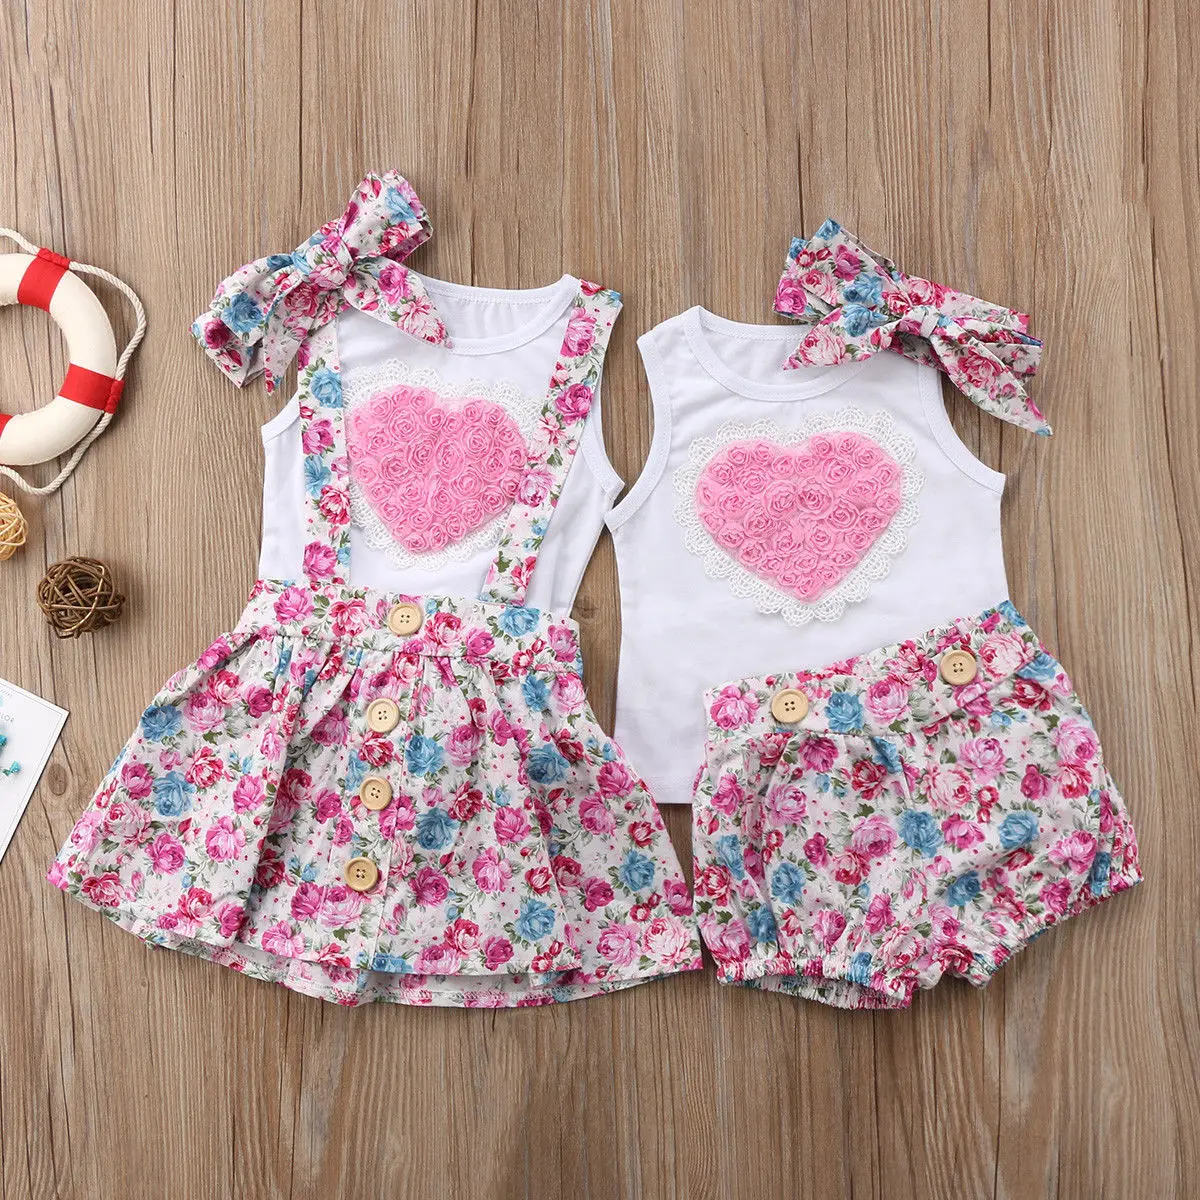 Г., новая брендовая хлопковая одежда для новорожденных девочек и сестер, футболка, платье и штаны, комплект одежды с объемным цветком комплект из 3 предметов